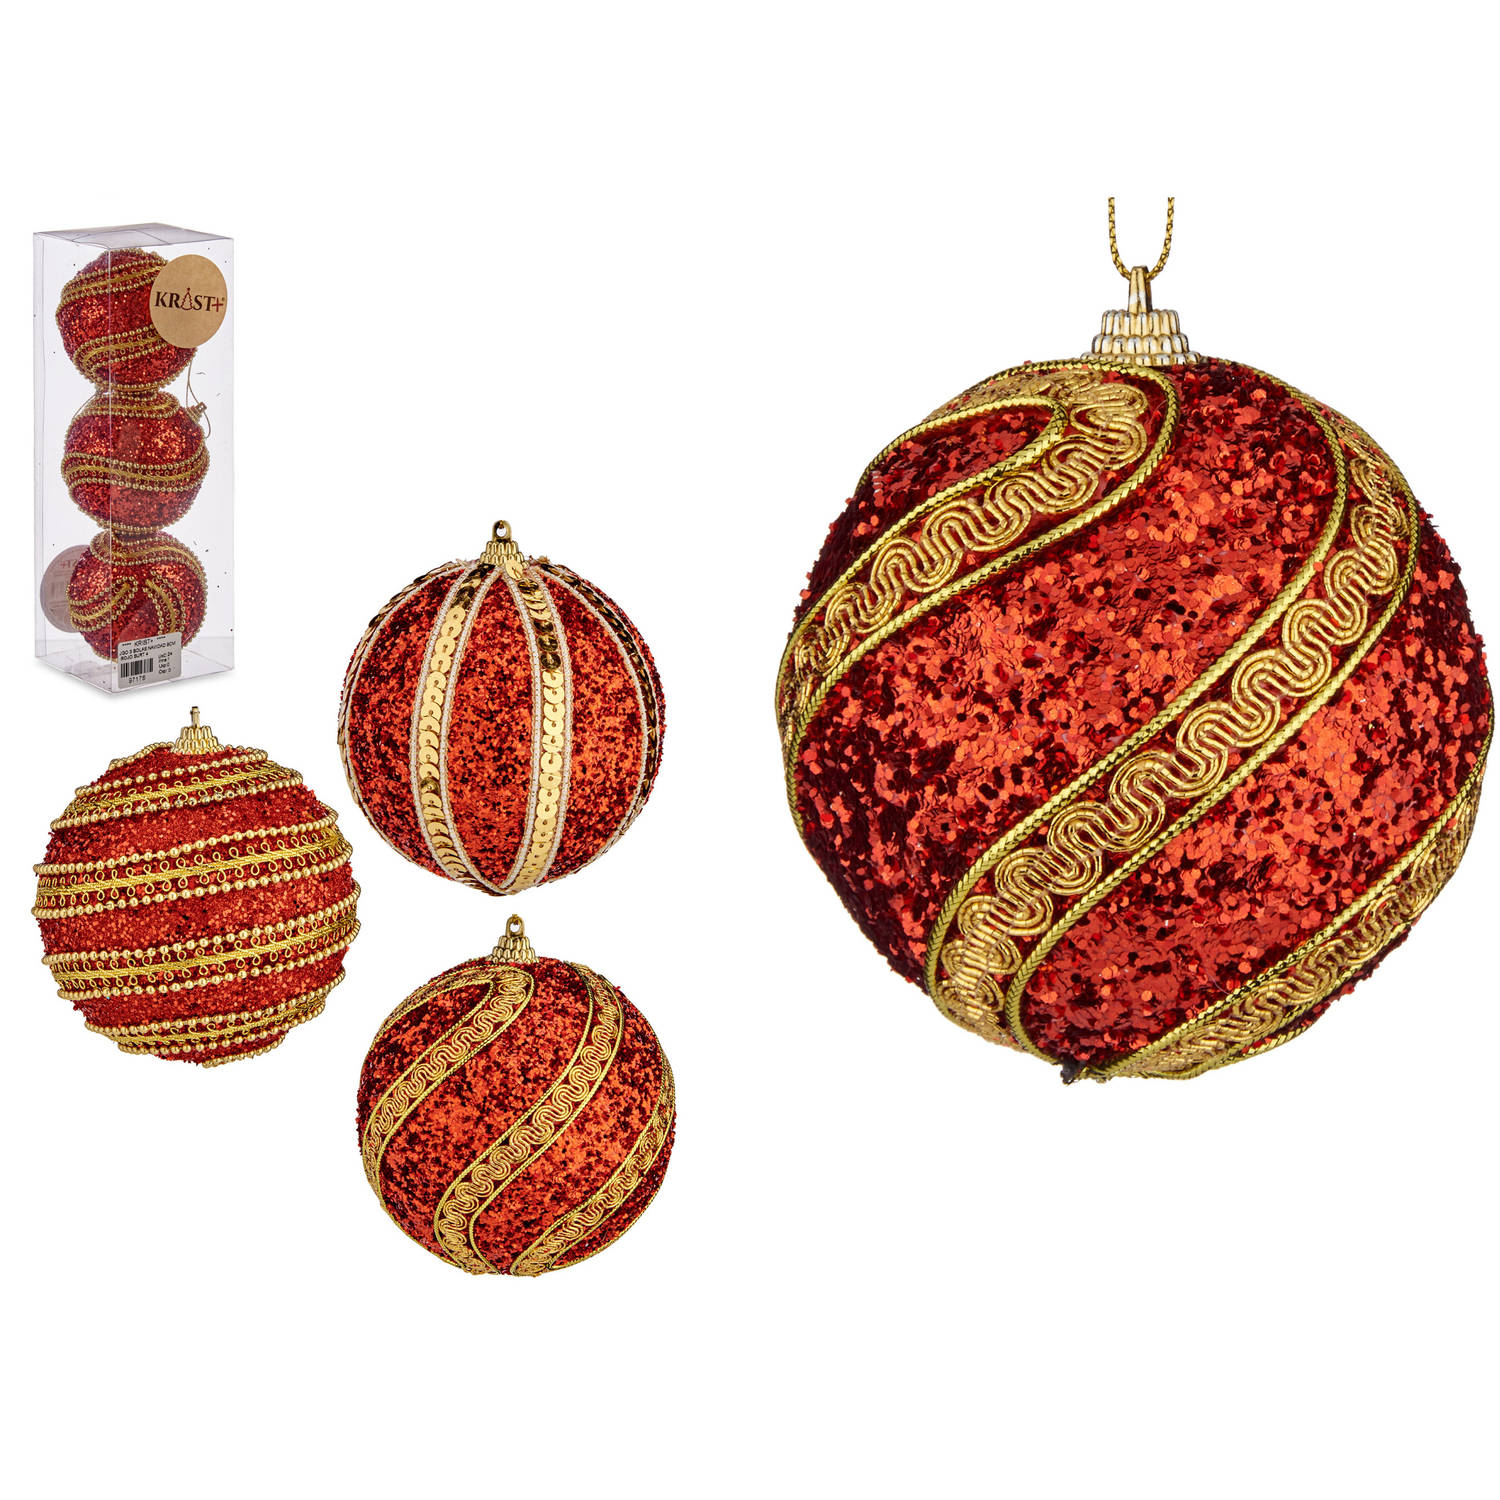 Arte R gedecoreerde kerstballen - 3x stuks - rood/goud - kunststof - 8 cm